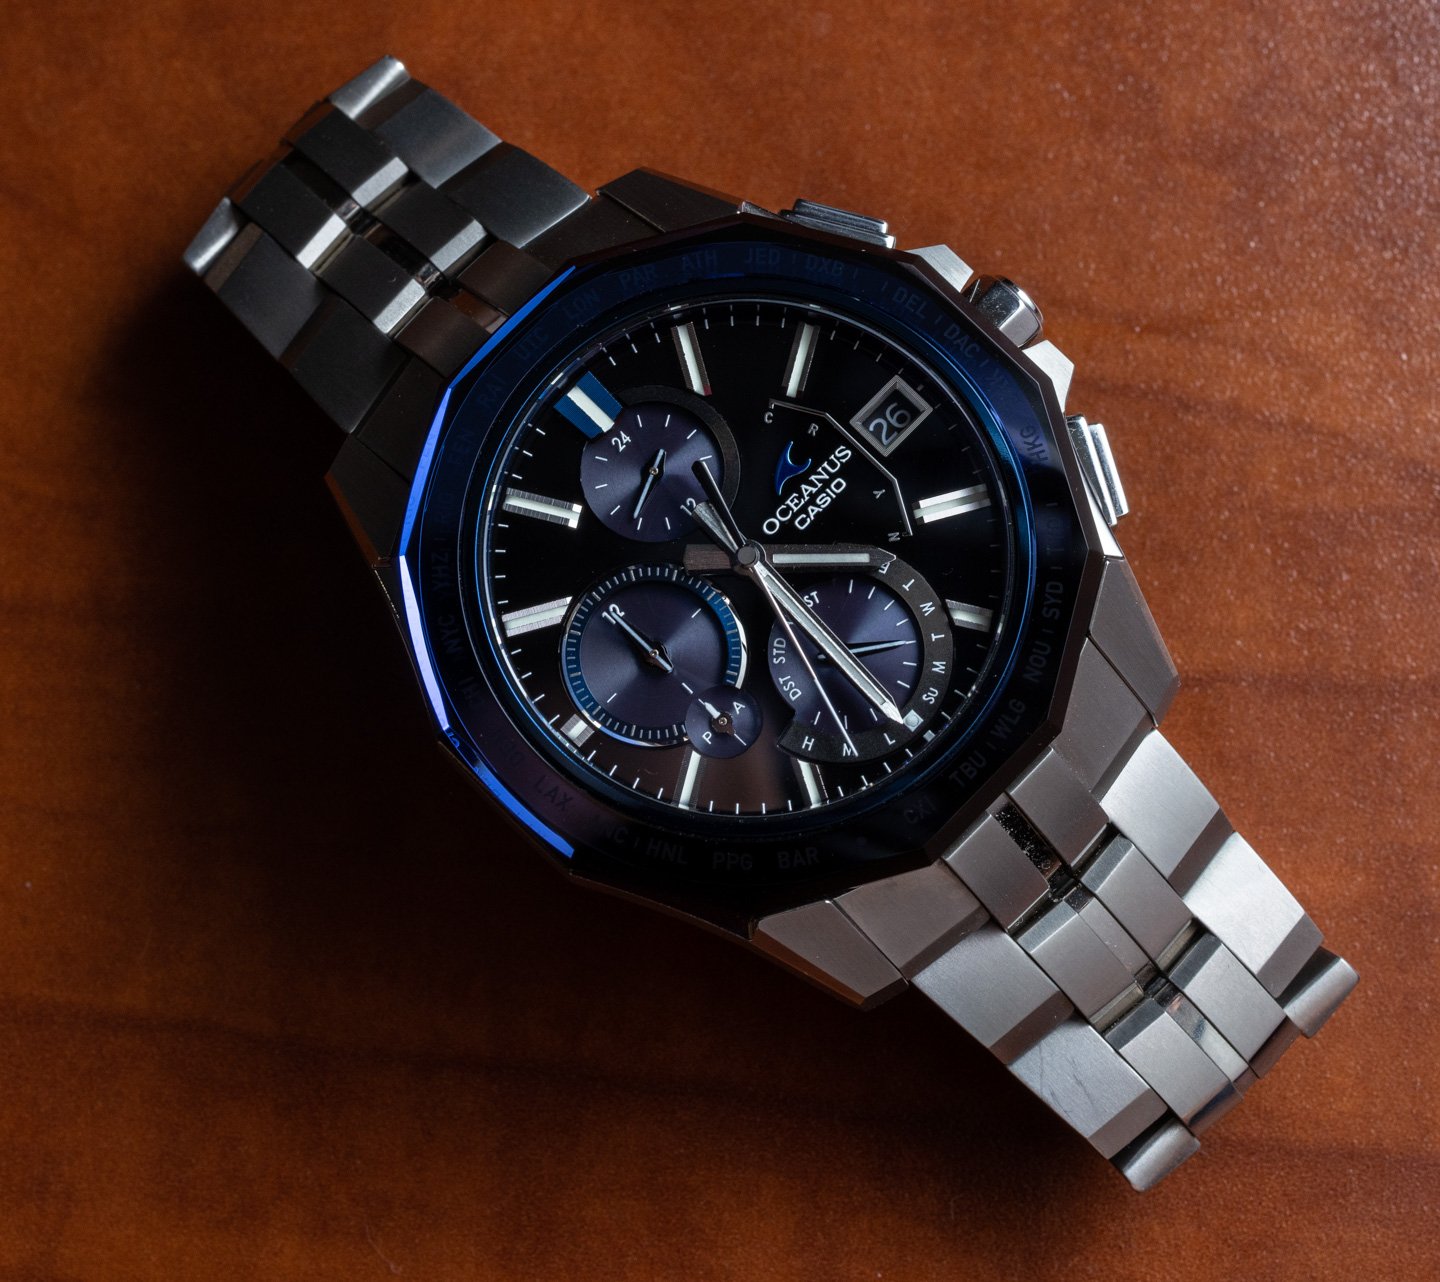 Обзор часов: Casio Oceanus Manta Titanium OCWS6000